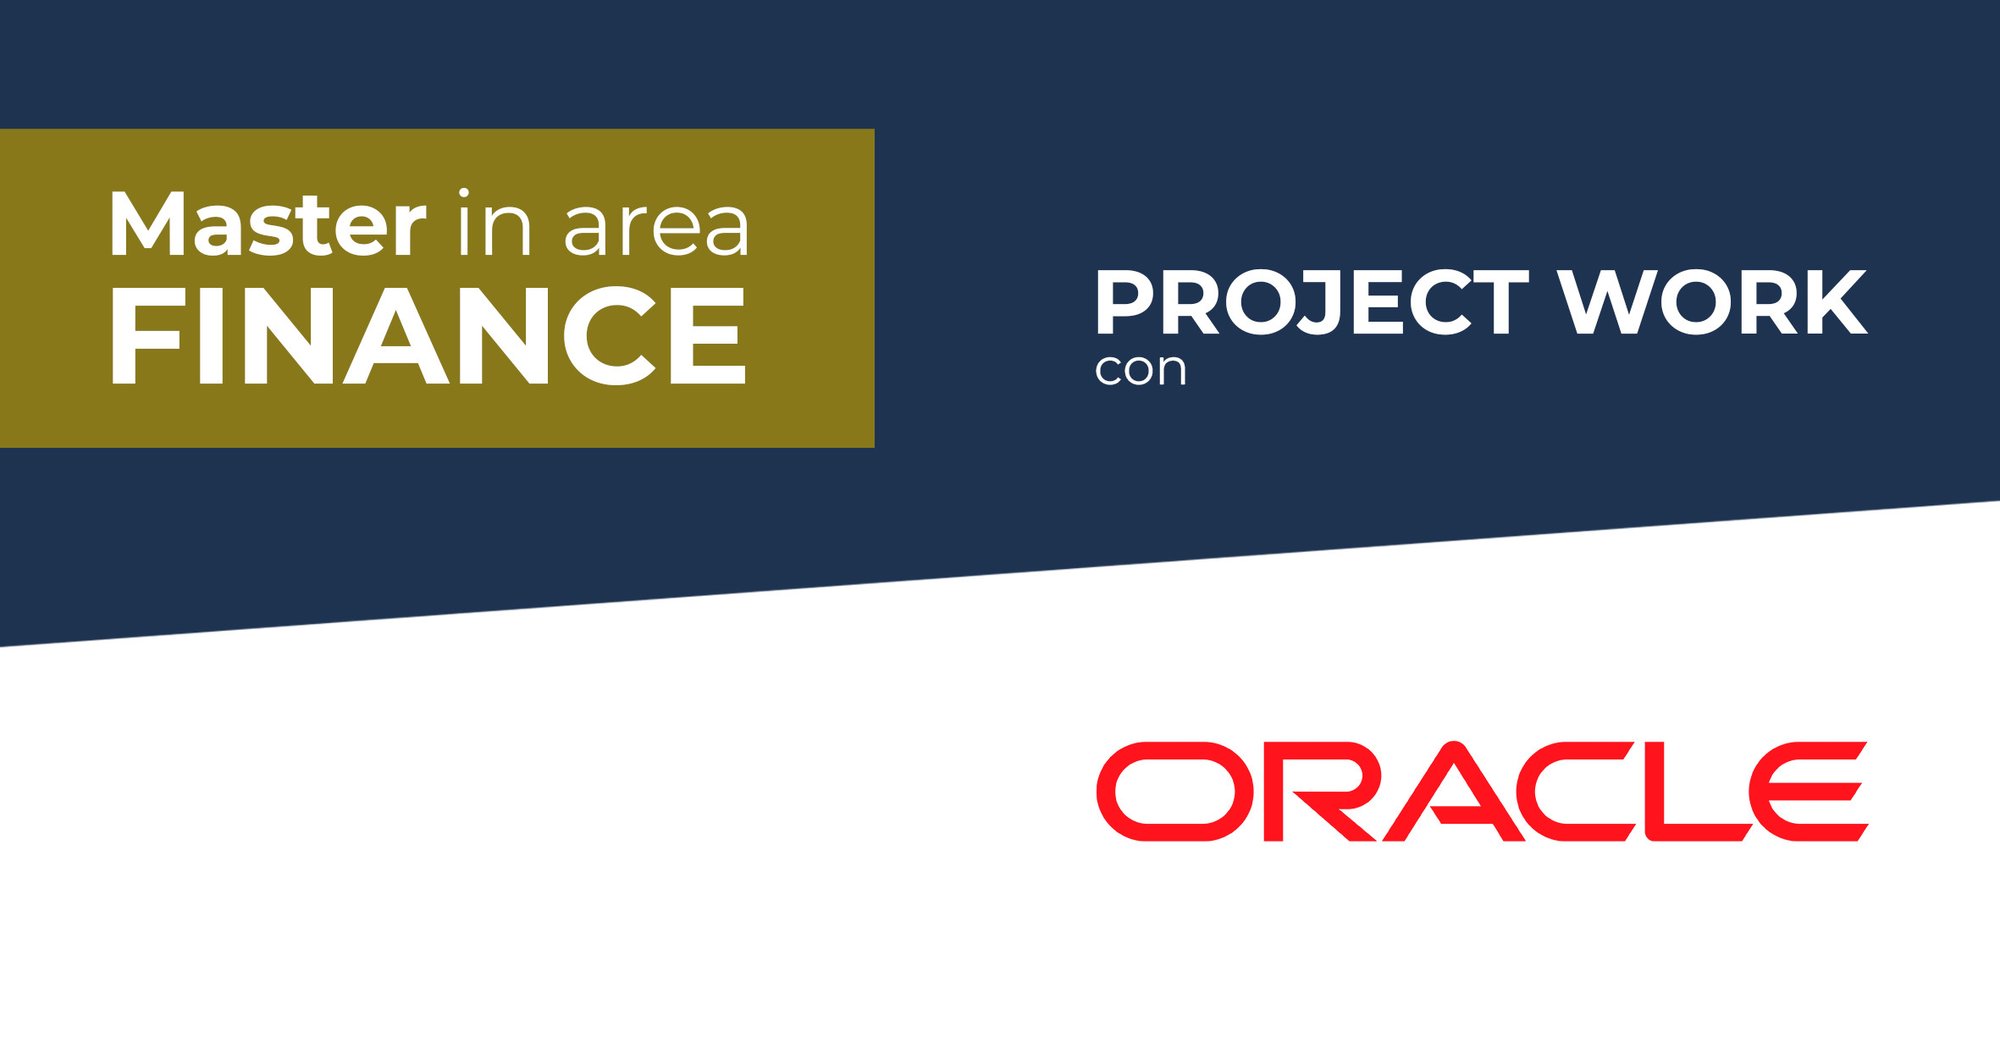 Oracle Italia assegna il Project Work agli Allievi del Master in Finance